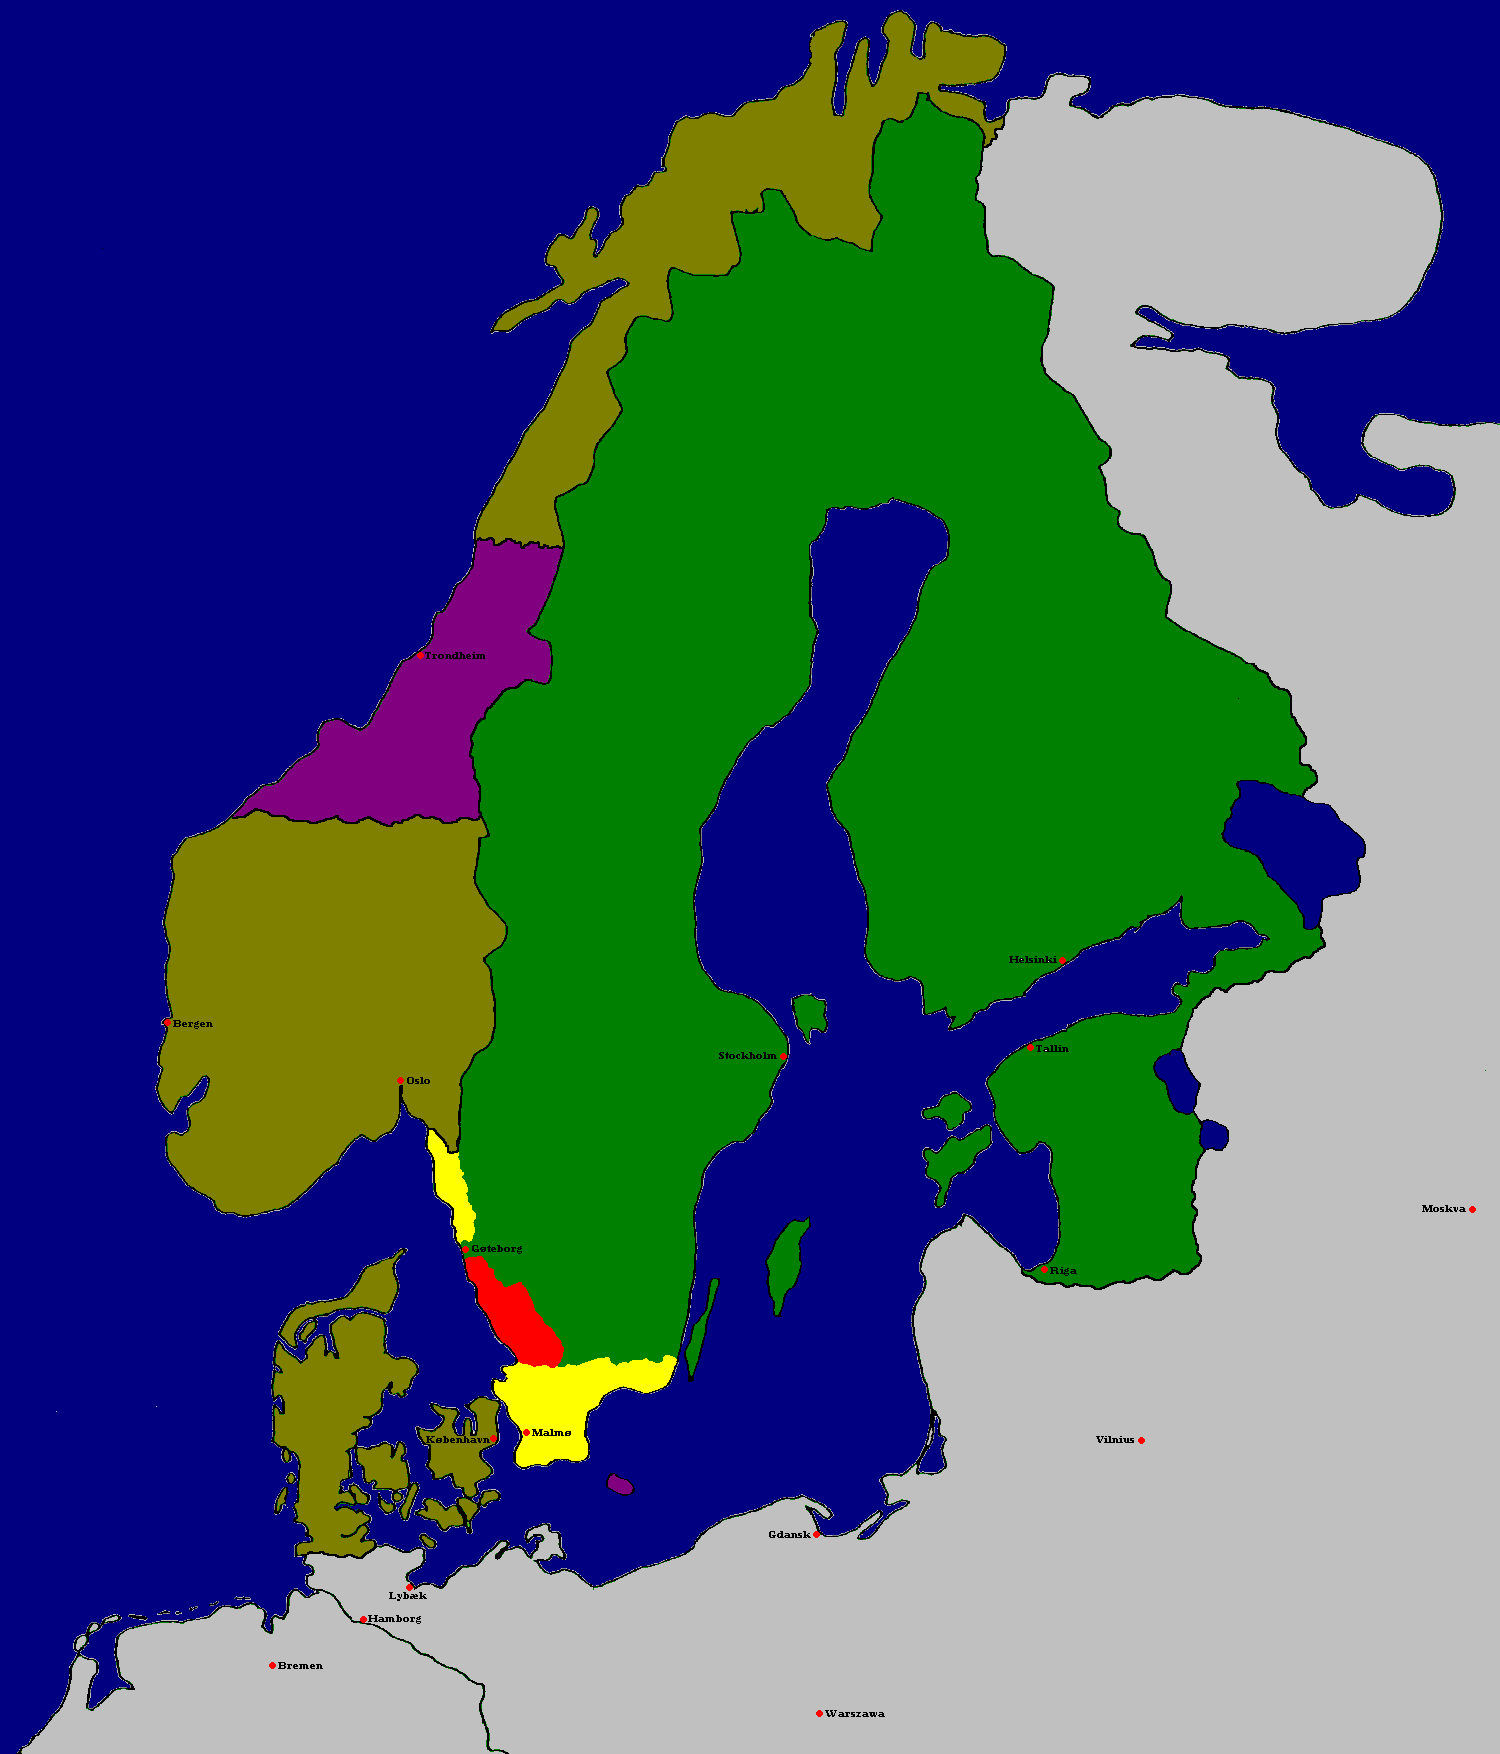 Реферат: Северная война 1655 1660